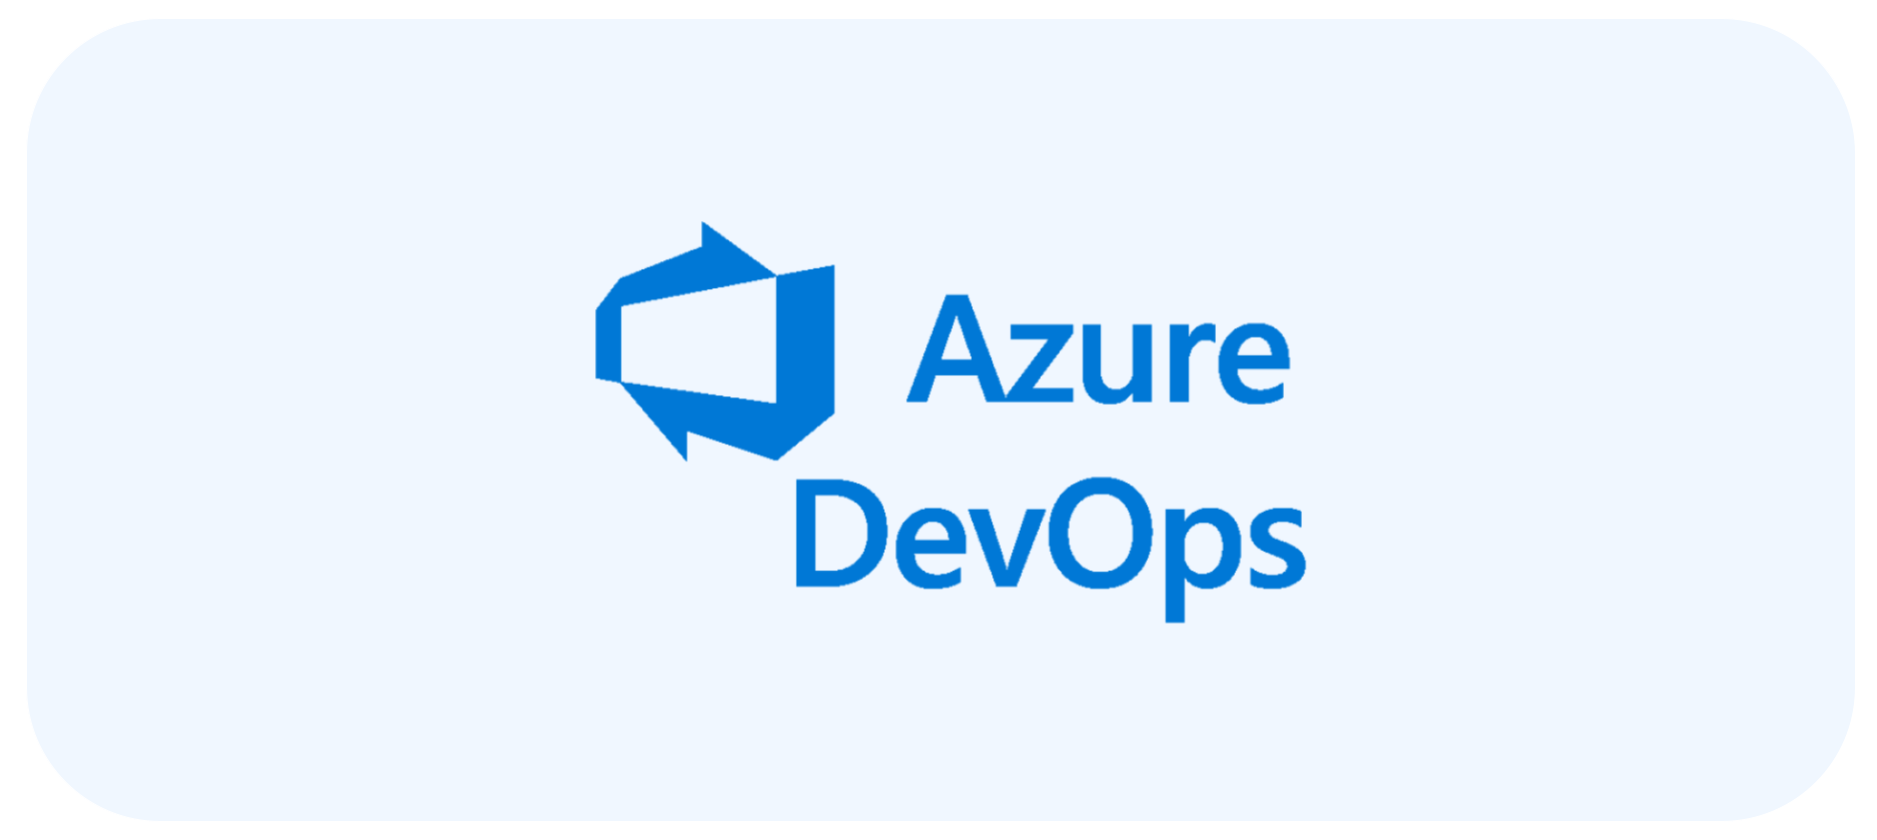 Logo Microsoft Azure DevOps light blue background